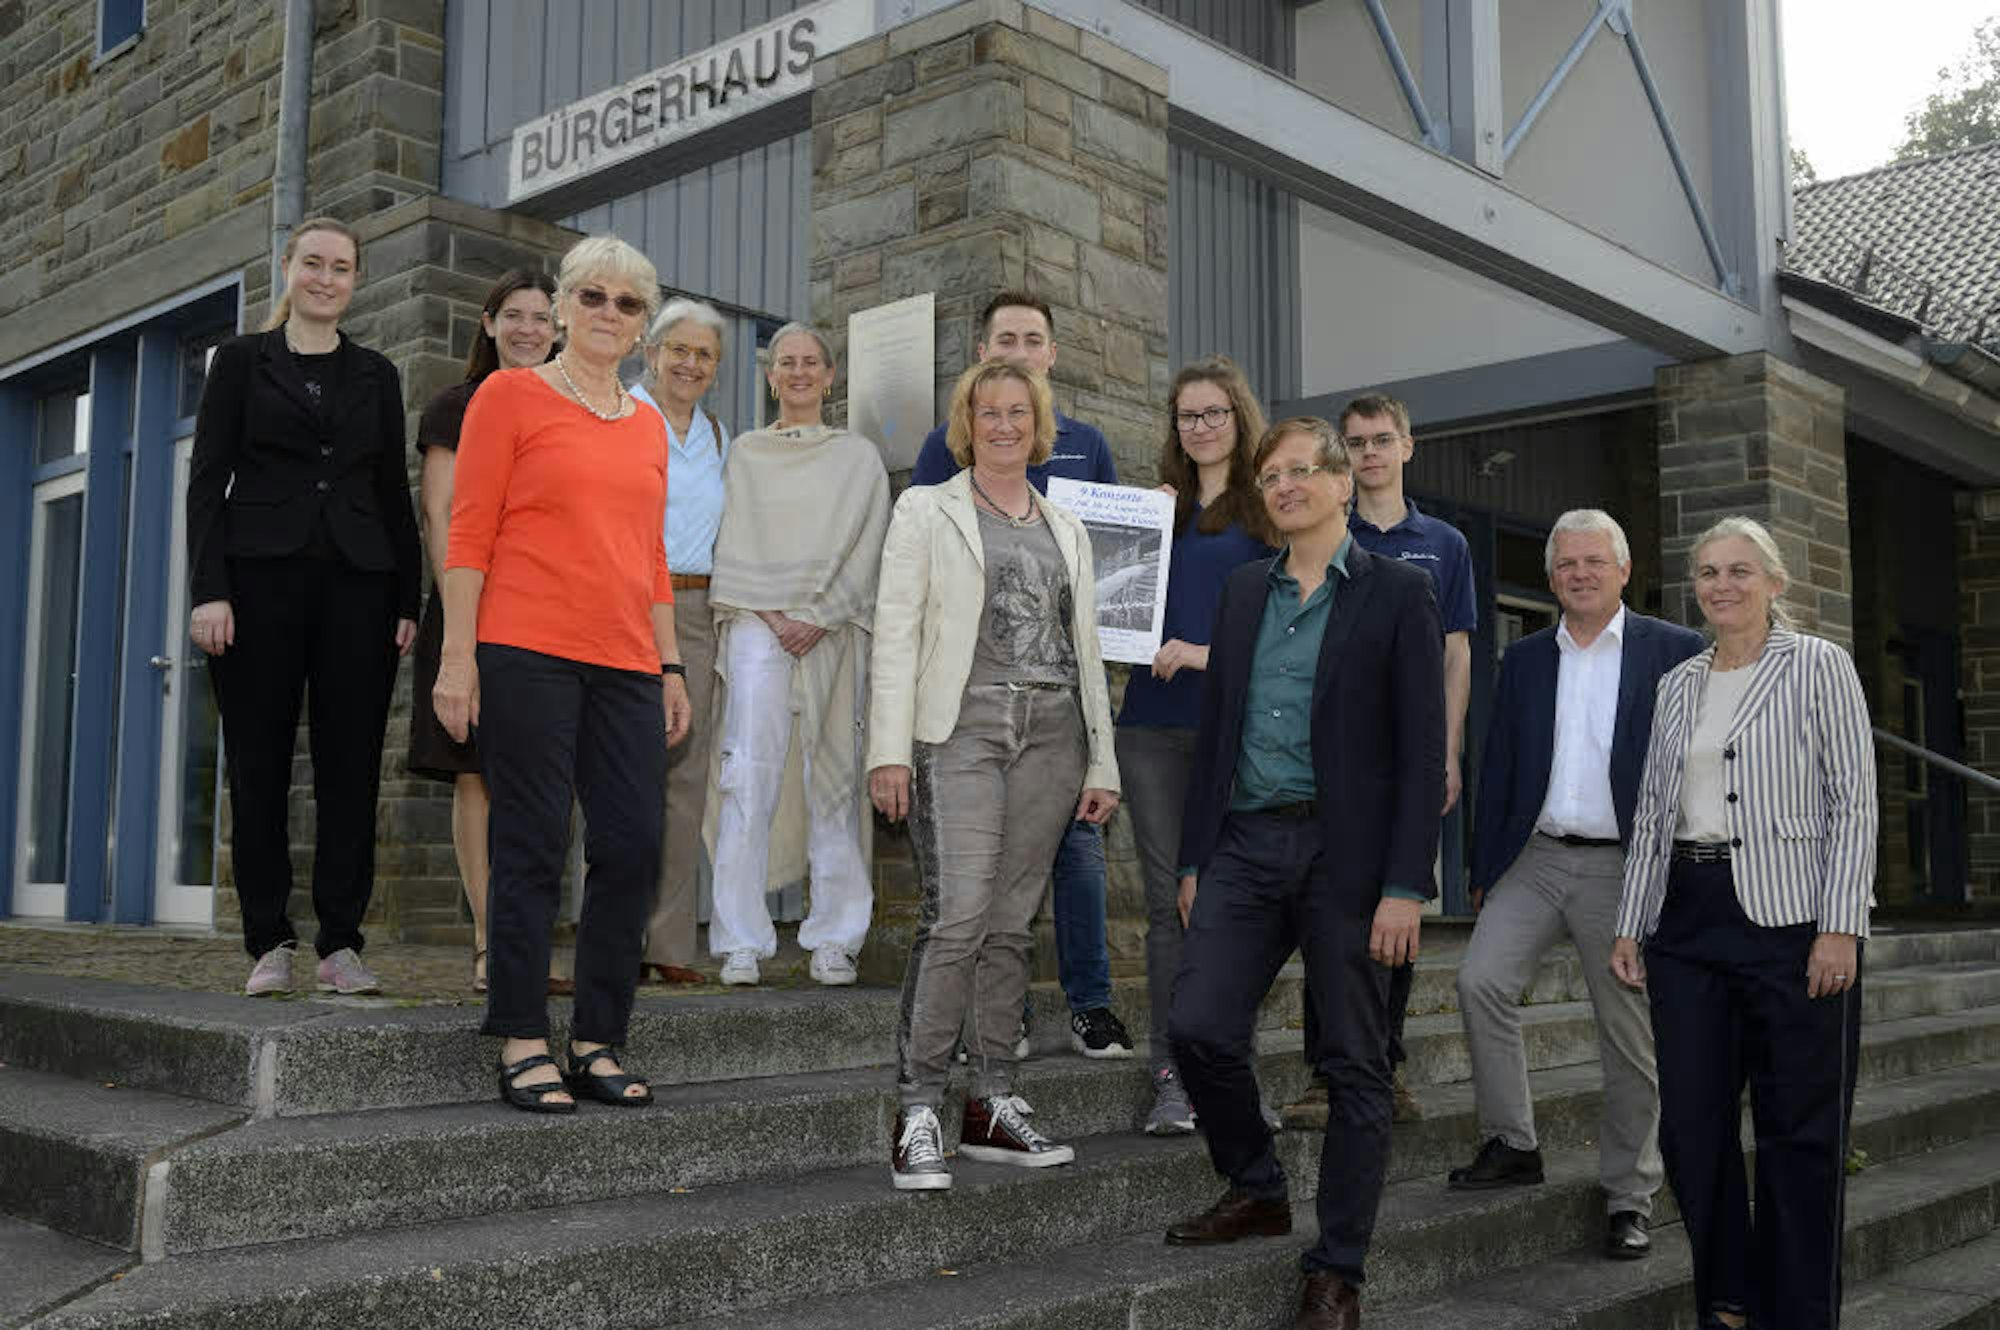 Die Organisatoren und Unterstützer der Stockhausen-Konzerte und -Kurse gemeinsam auf der Treppe am Bürgerhaus Kürten.